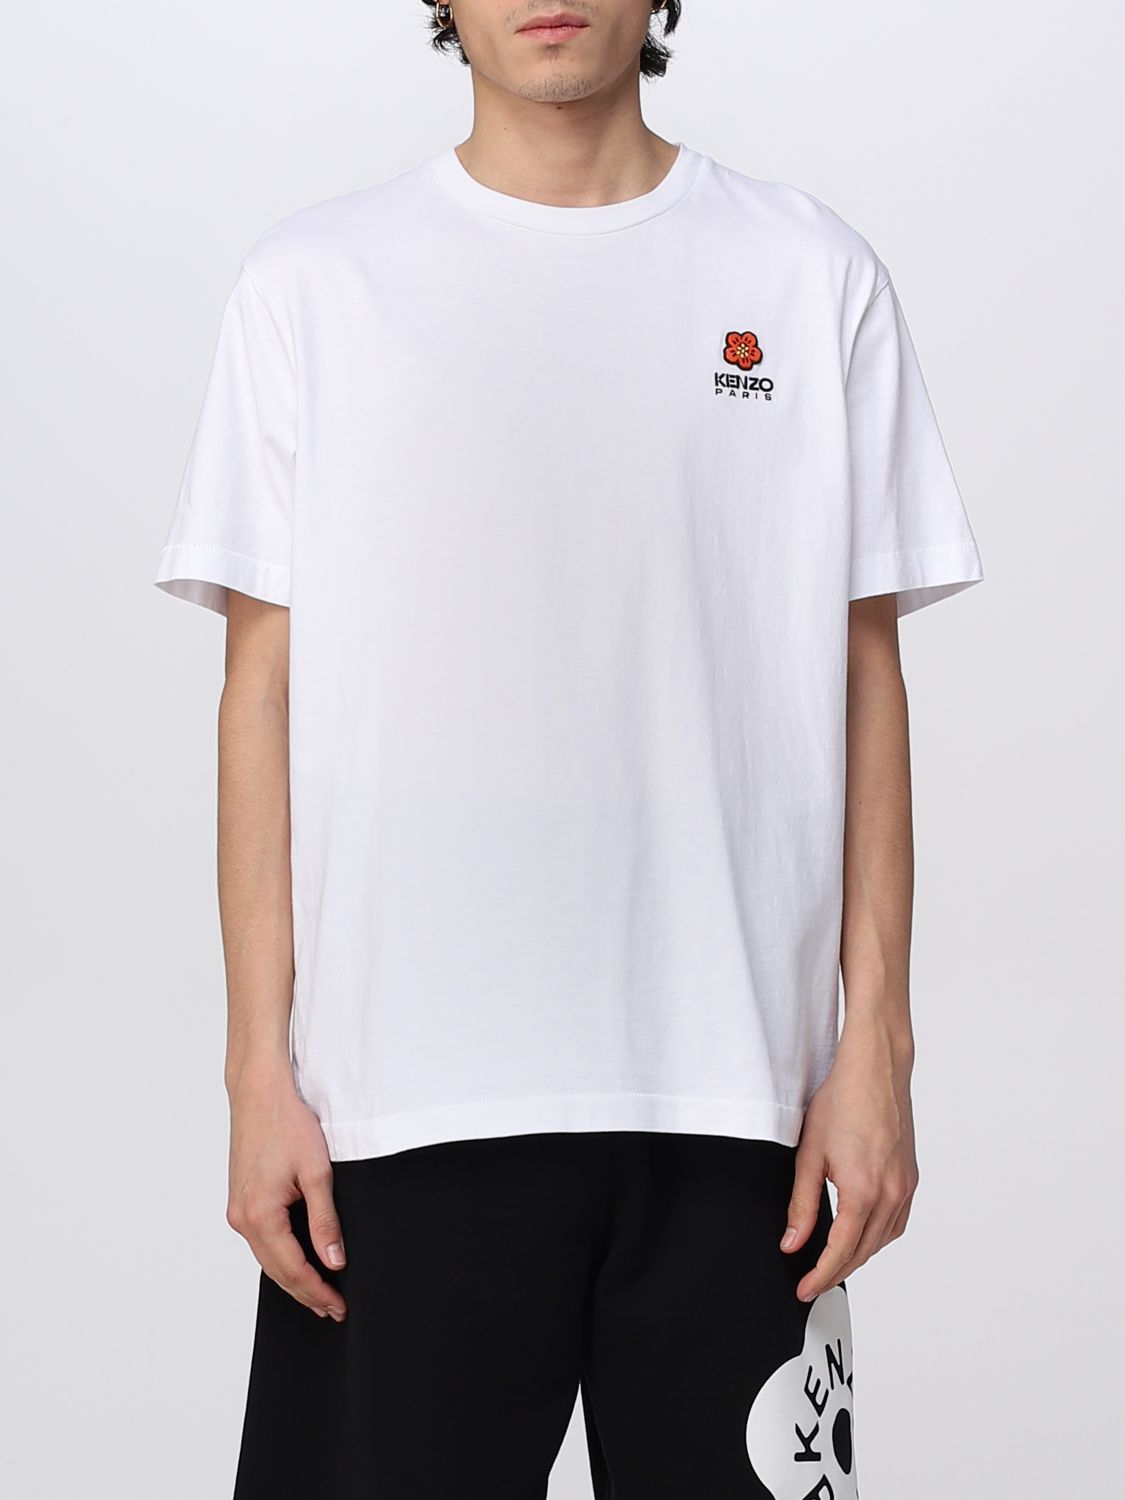 T-shirt Kenzo: T-shirt Boke Flower Kenzo in cotone bianco 1